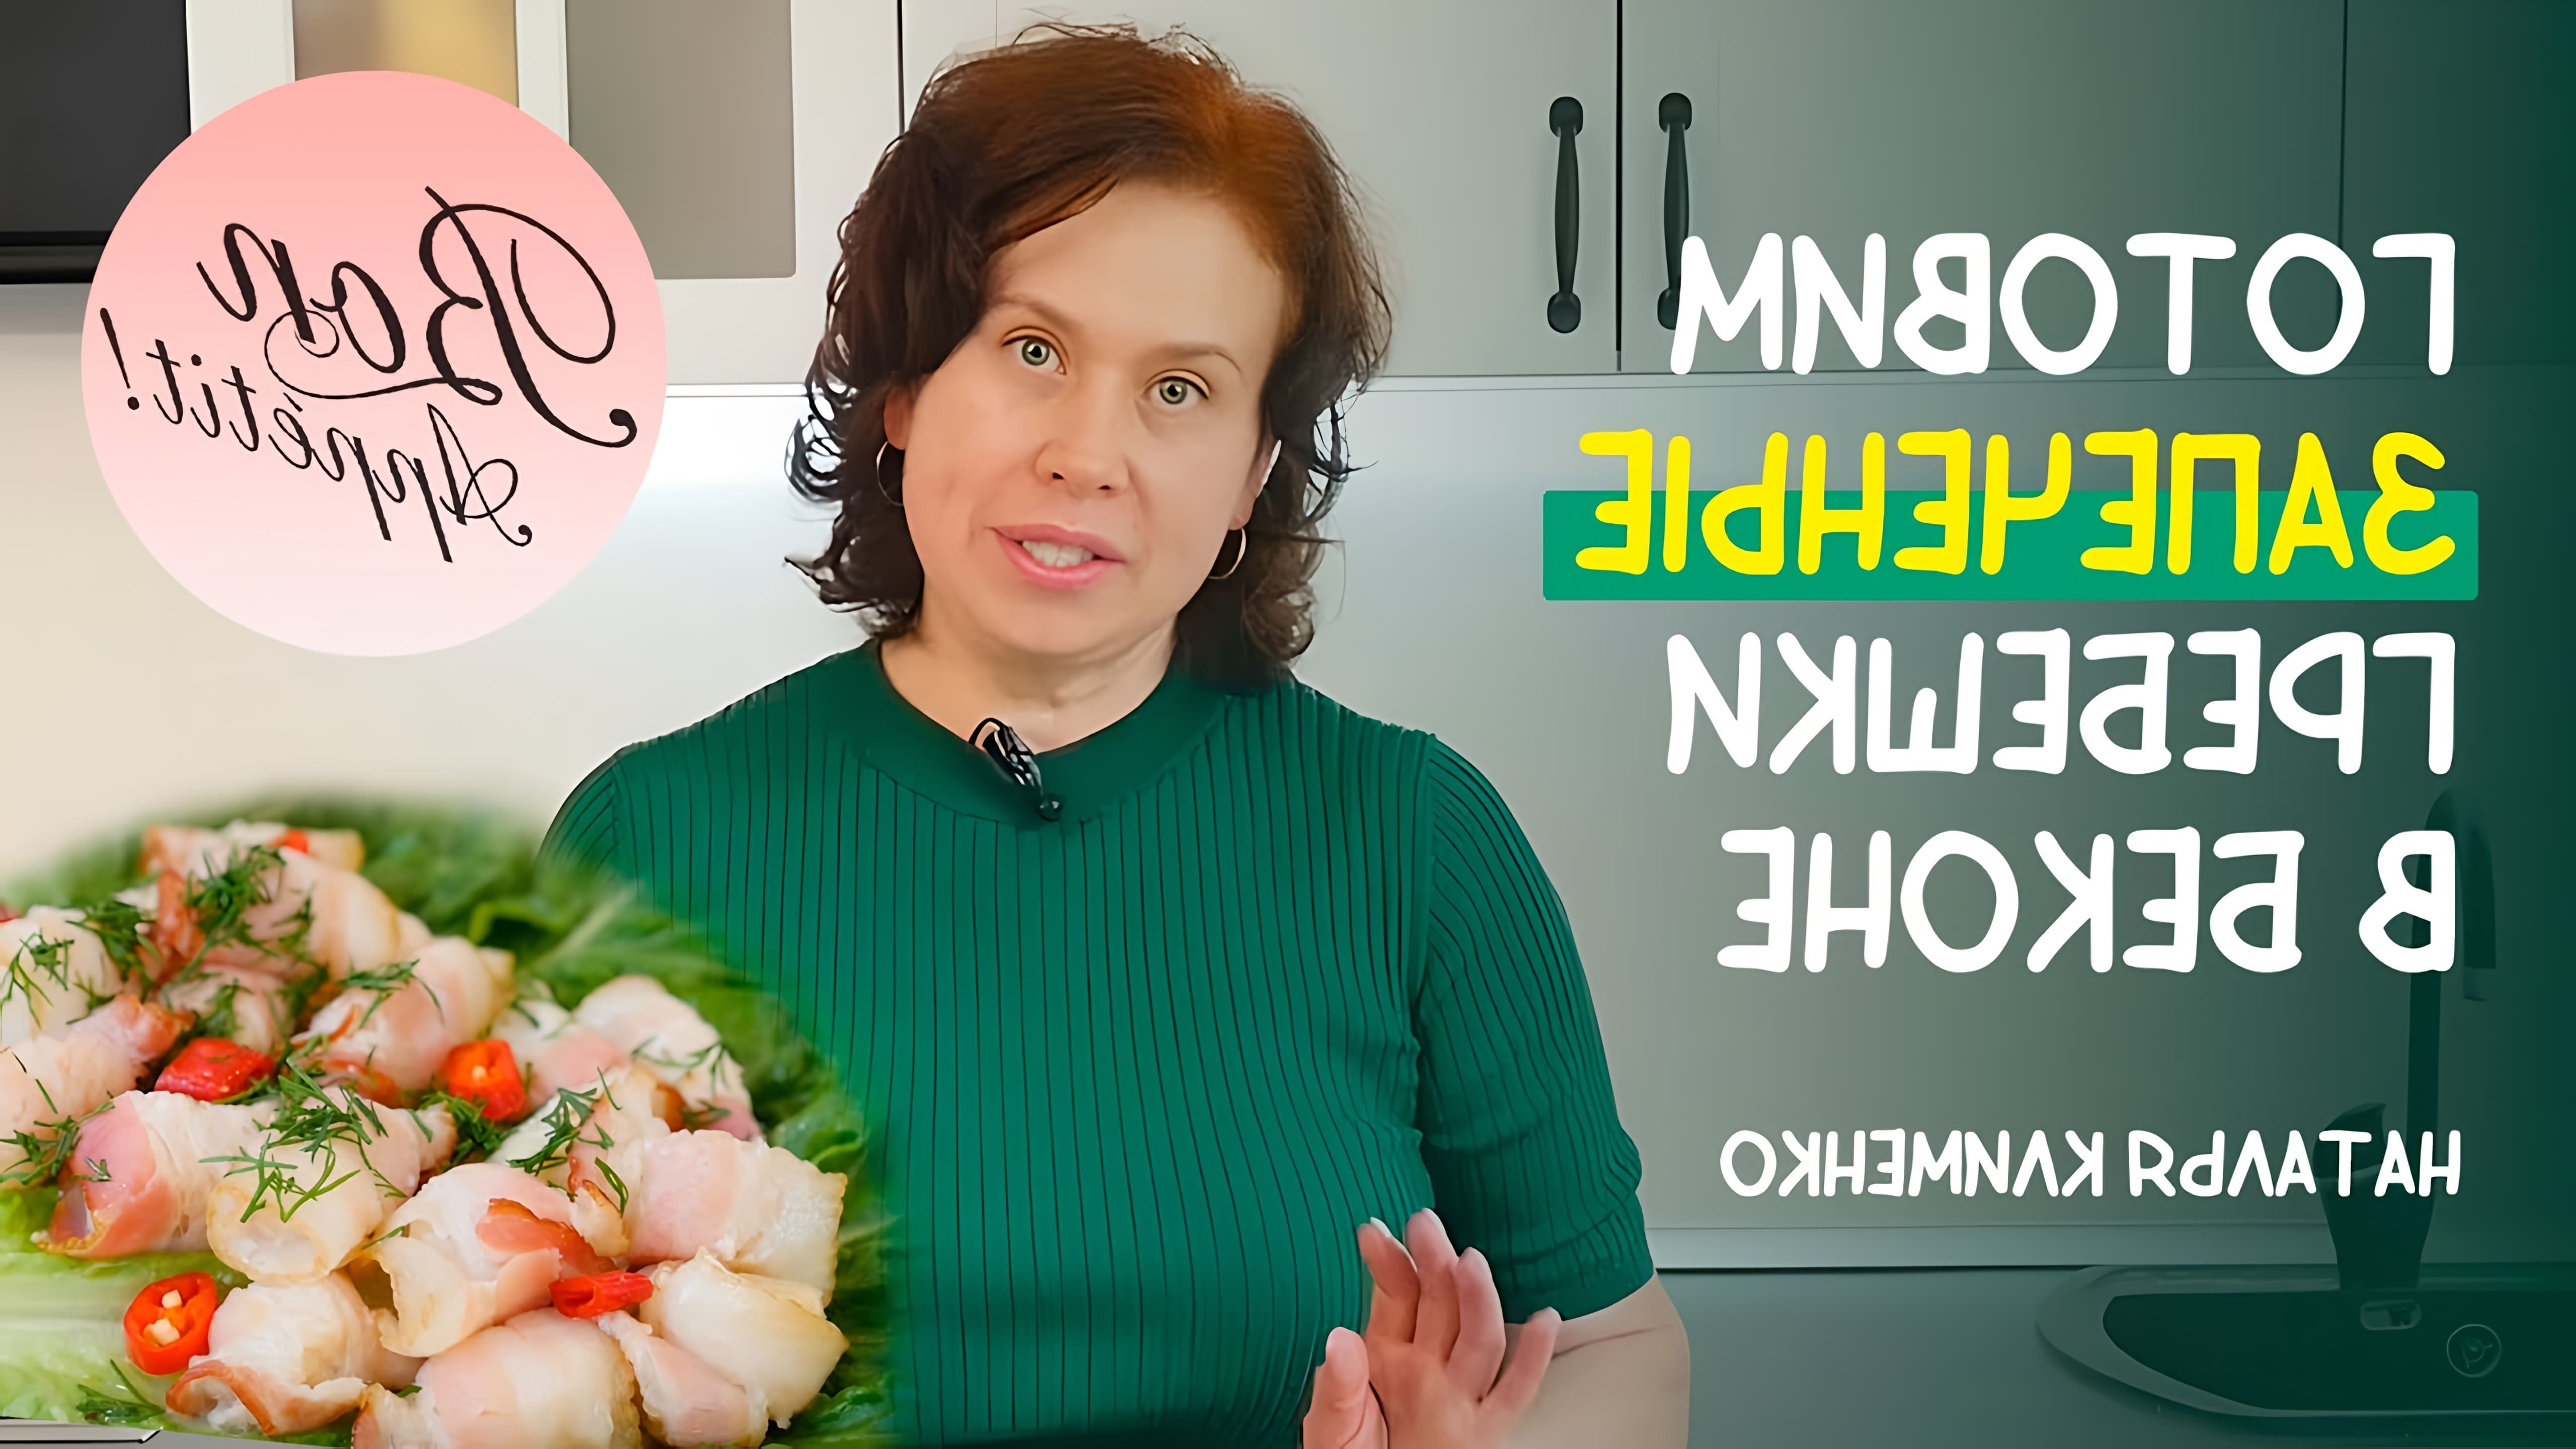 В этом видео демонстрируется простой и вкусный рецепт приготовления запеченных гребешков в беконе